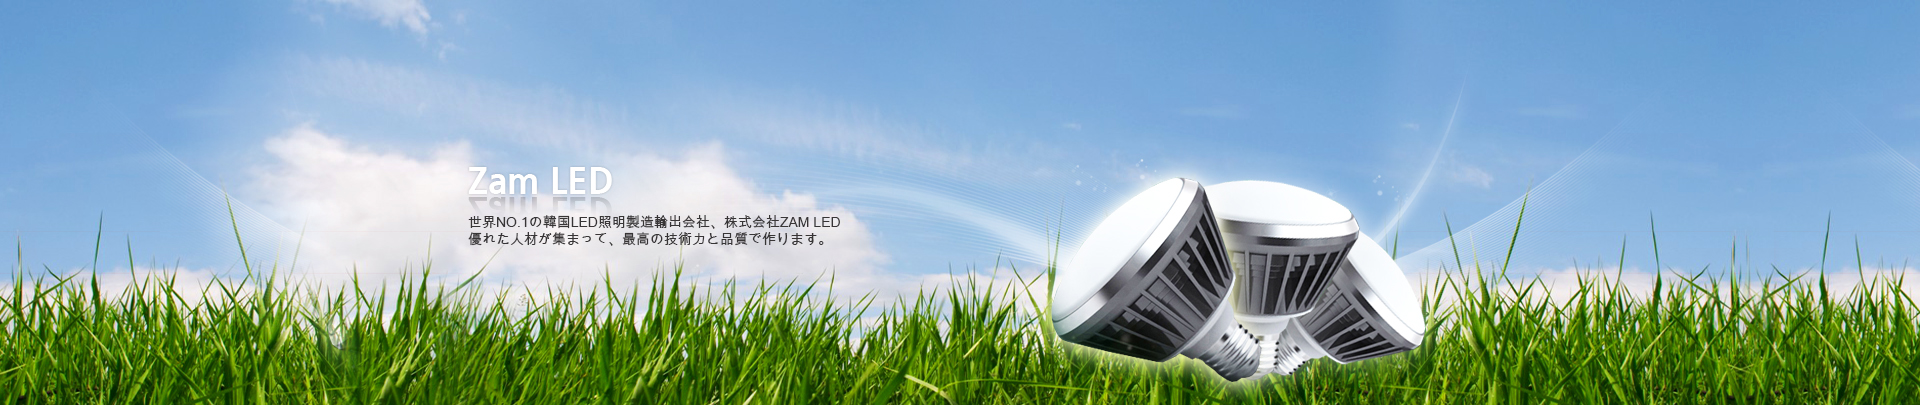 ZAM LED Visual Image - Japanese